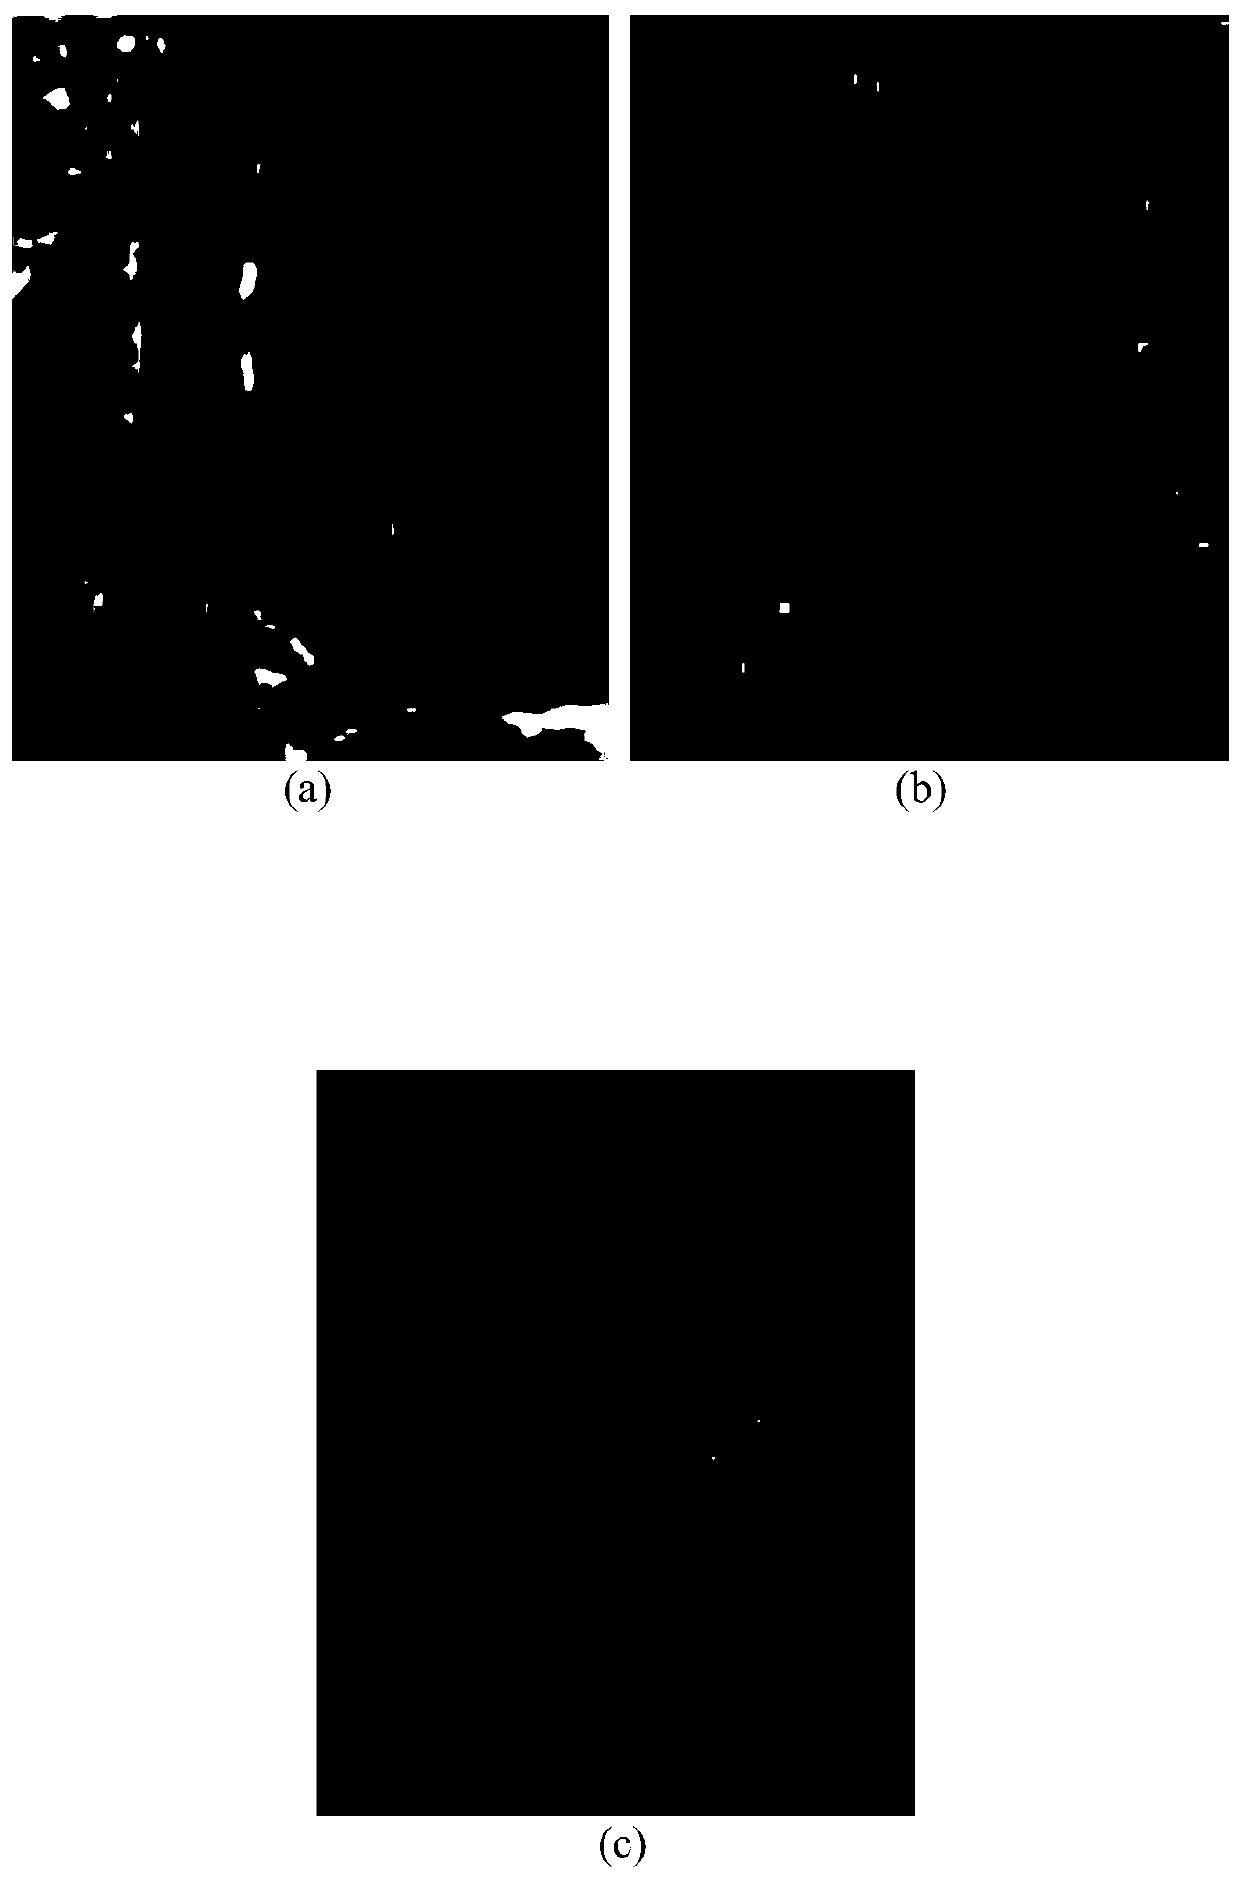 Hyperspectral image target detection method based on variational self-coding network